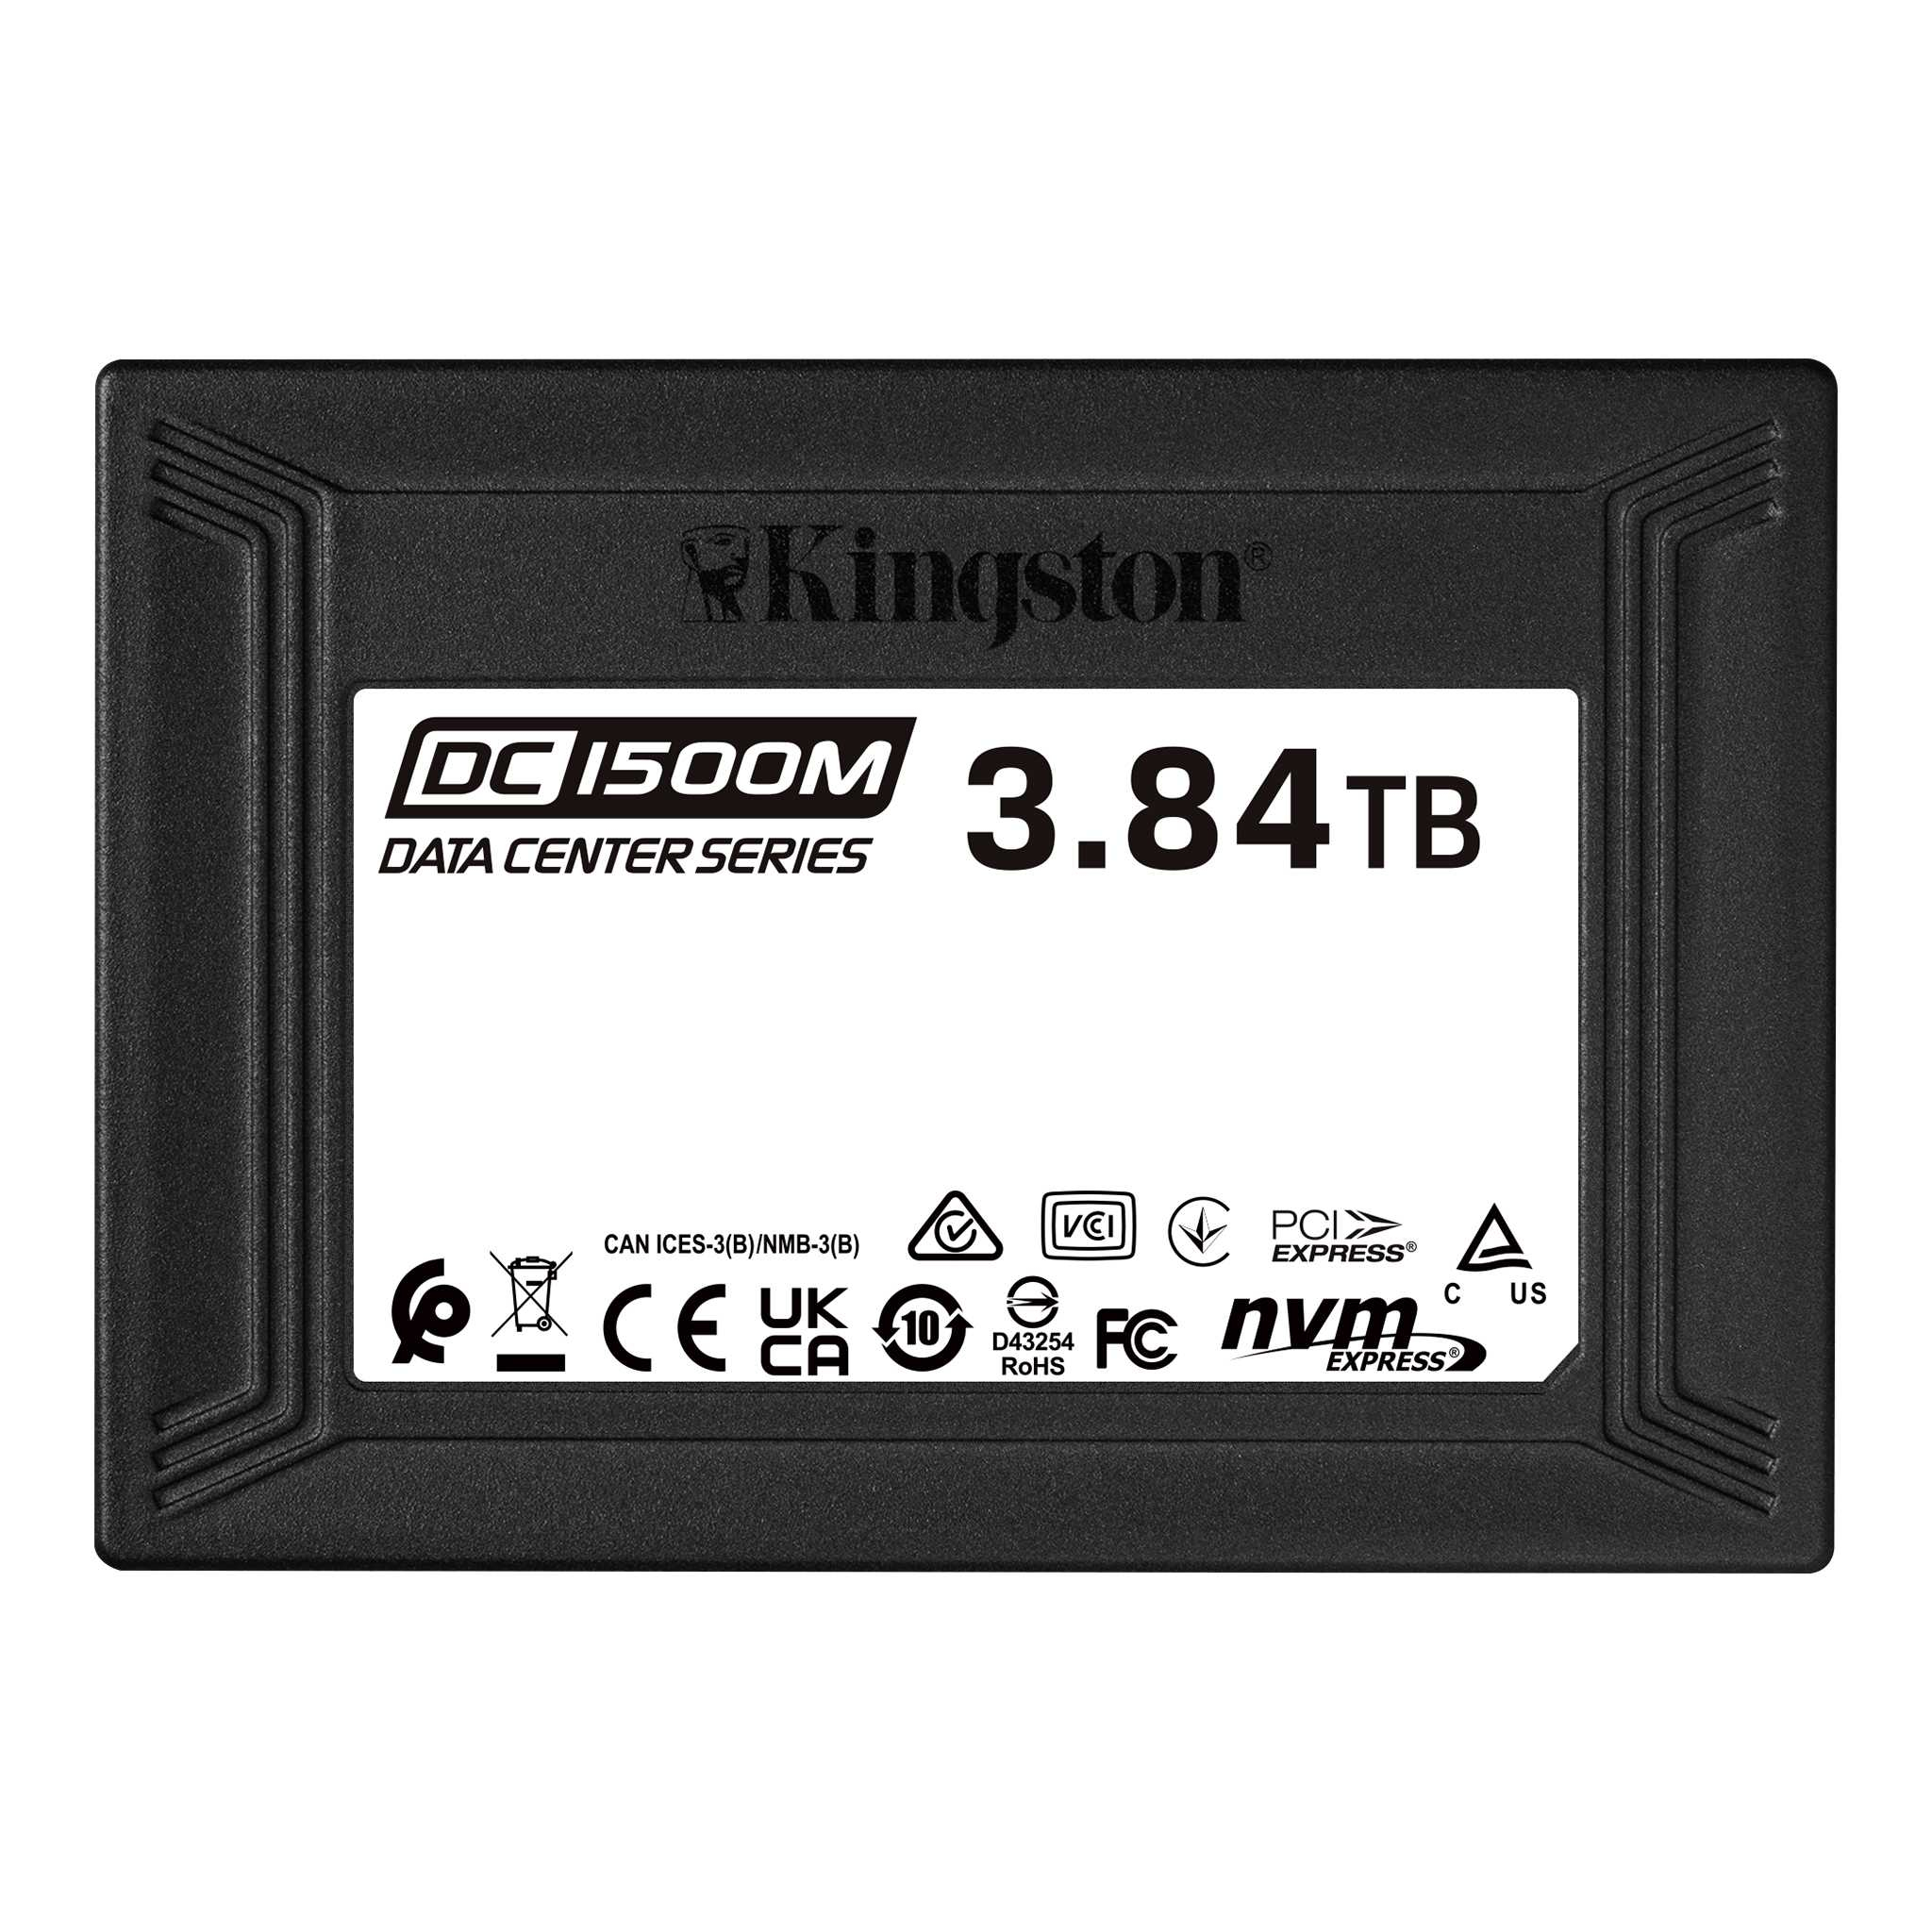 Kingston Technology DC1500M U.2 Enterprise SSD 3840 GB PCI Express 3.0 3D TLC NV